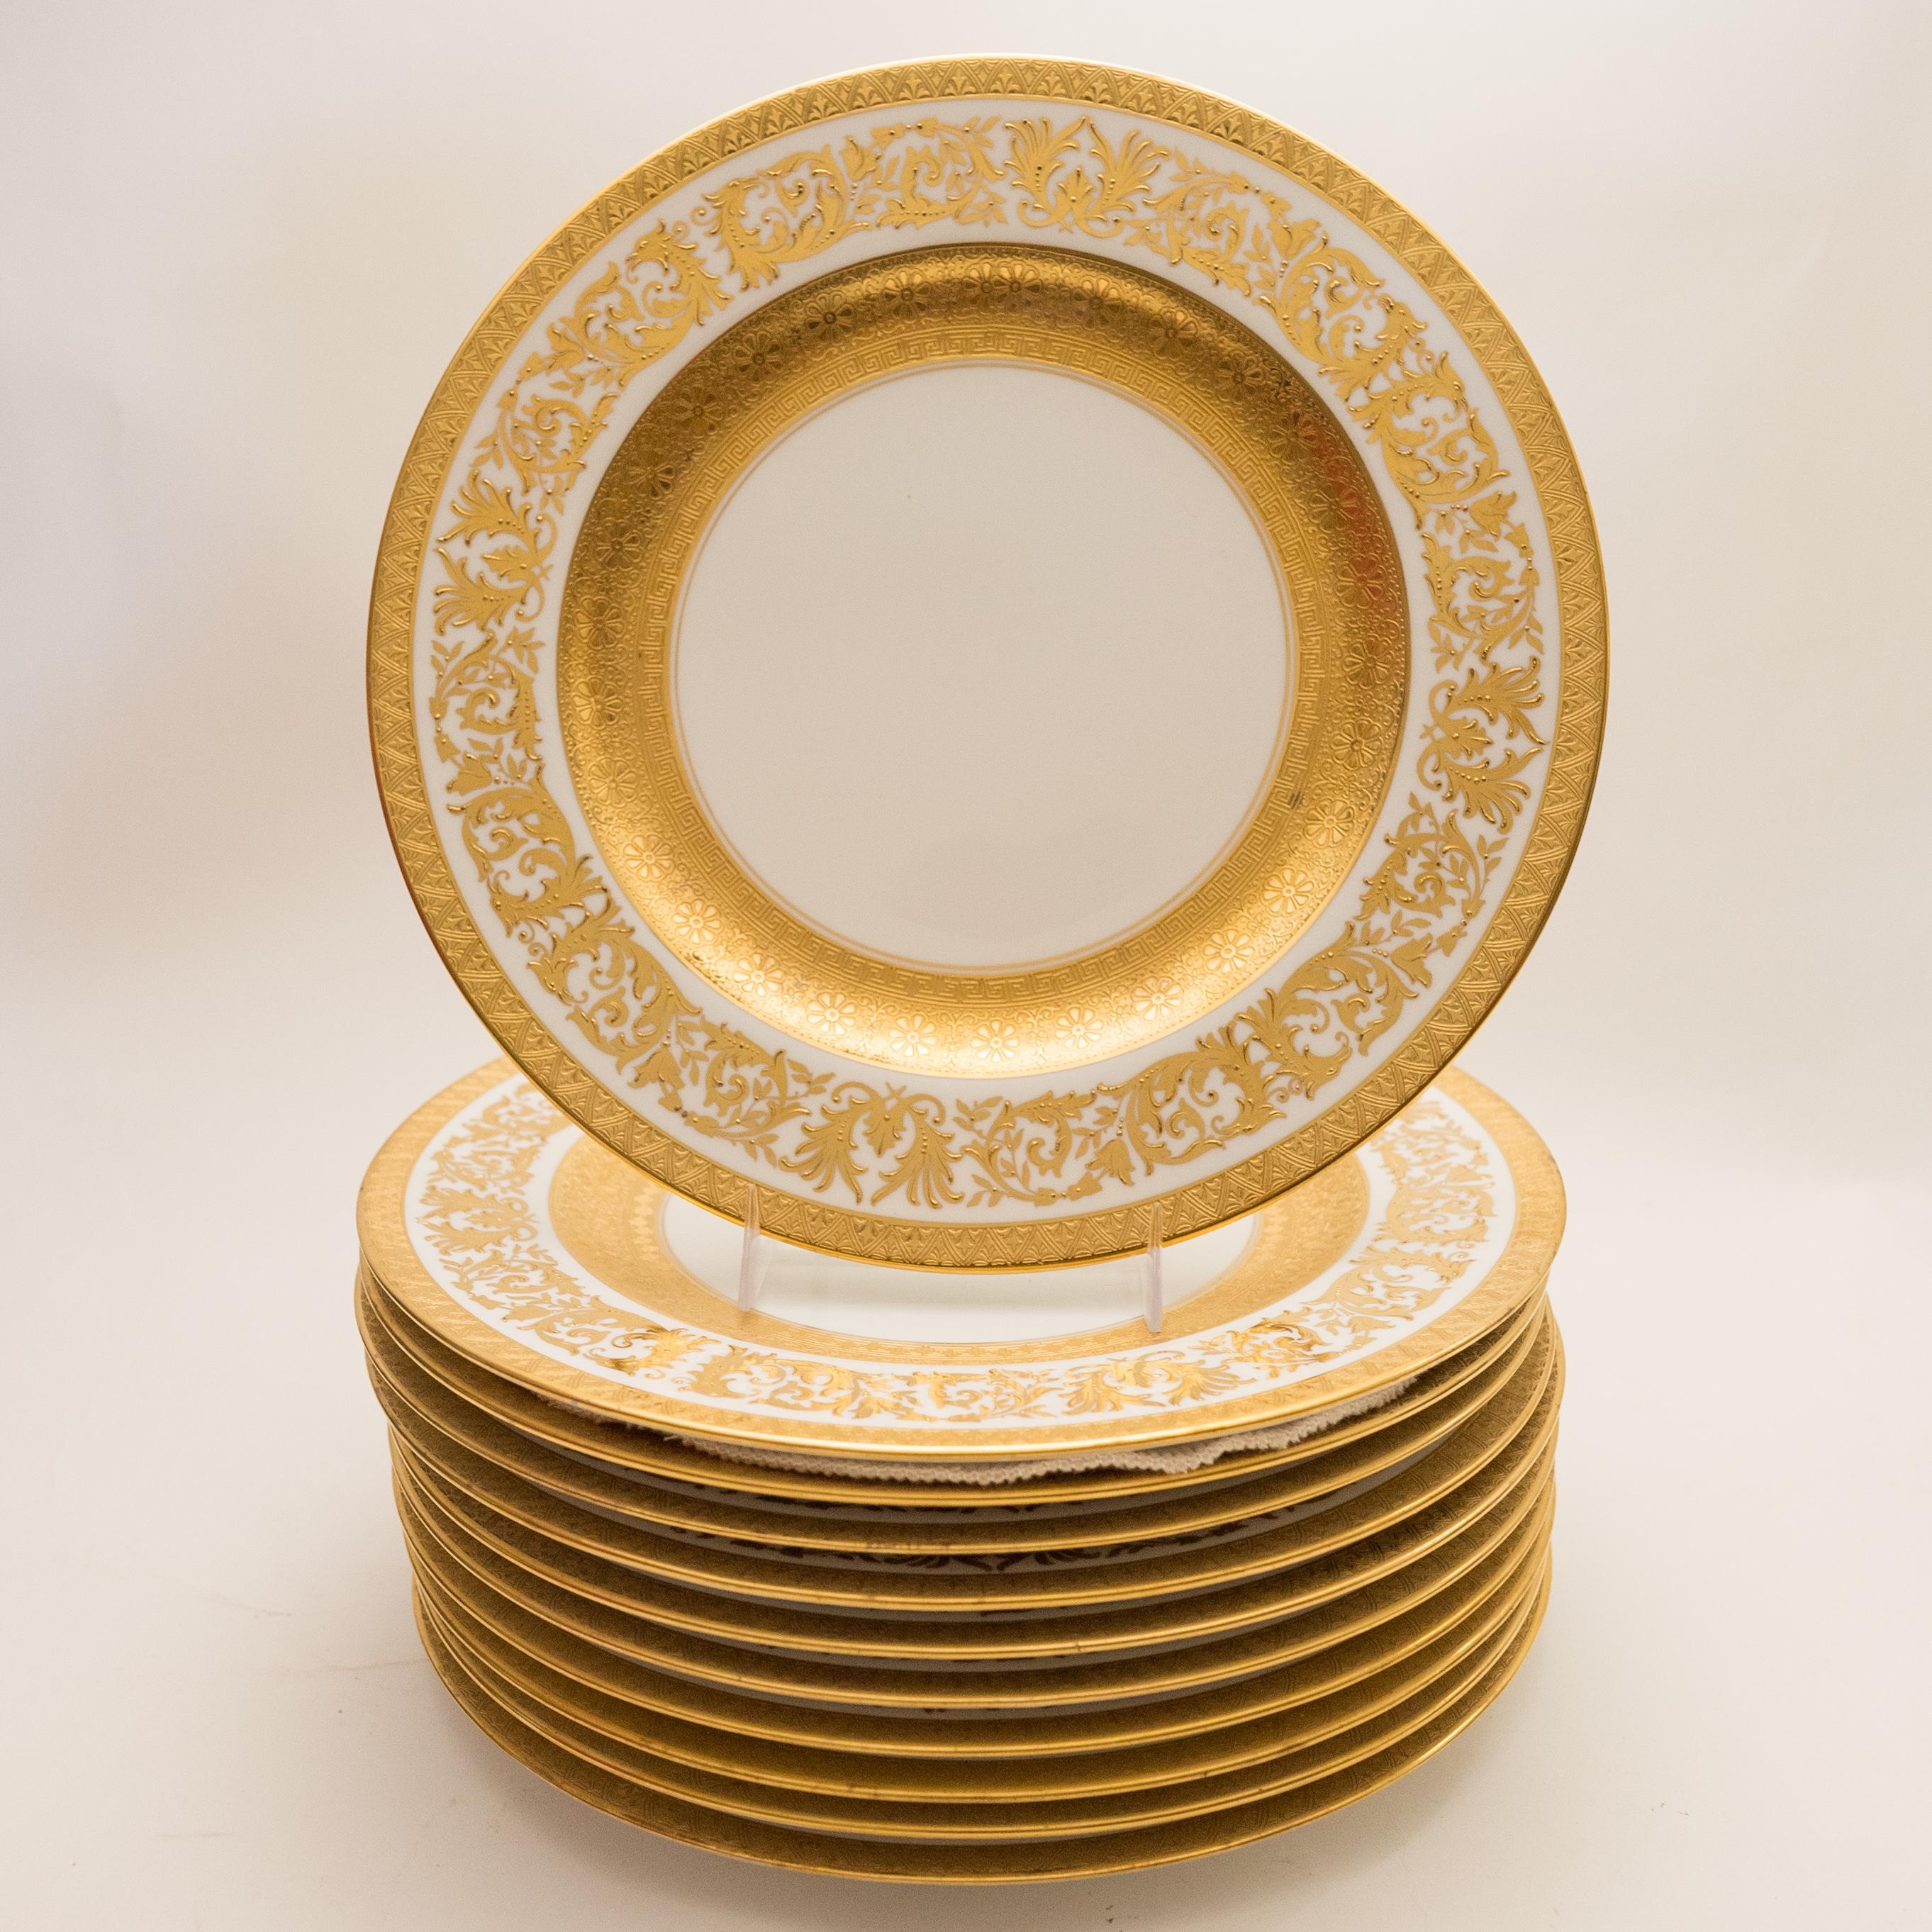 Début du 20ème siècle 11 assiettes plates incrustées de dorures, commande ancienne sur mesure avec large bandeau en or